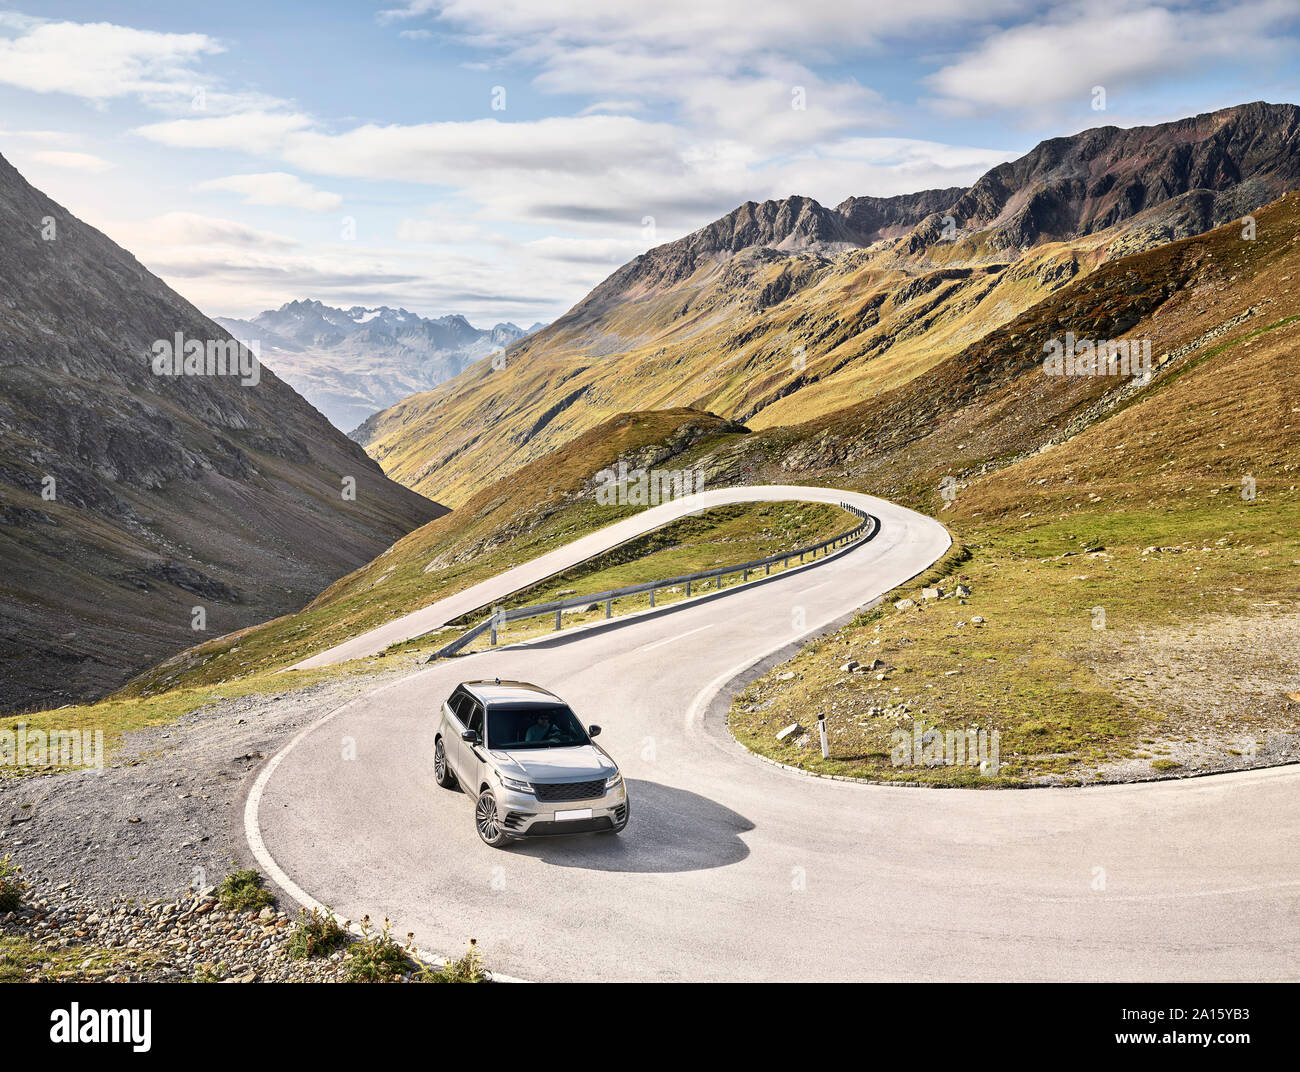 Le véhicule utilitaire sport, haute route alpine Timmelsjoch, Tyrol, Autriche Banque D'Images